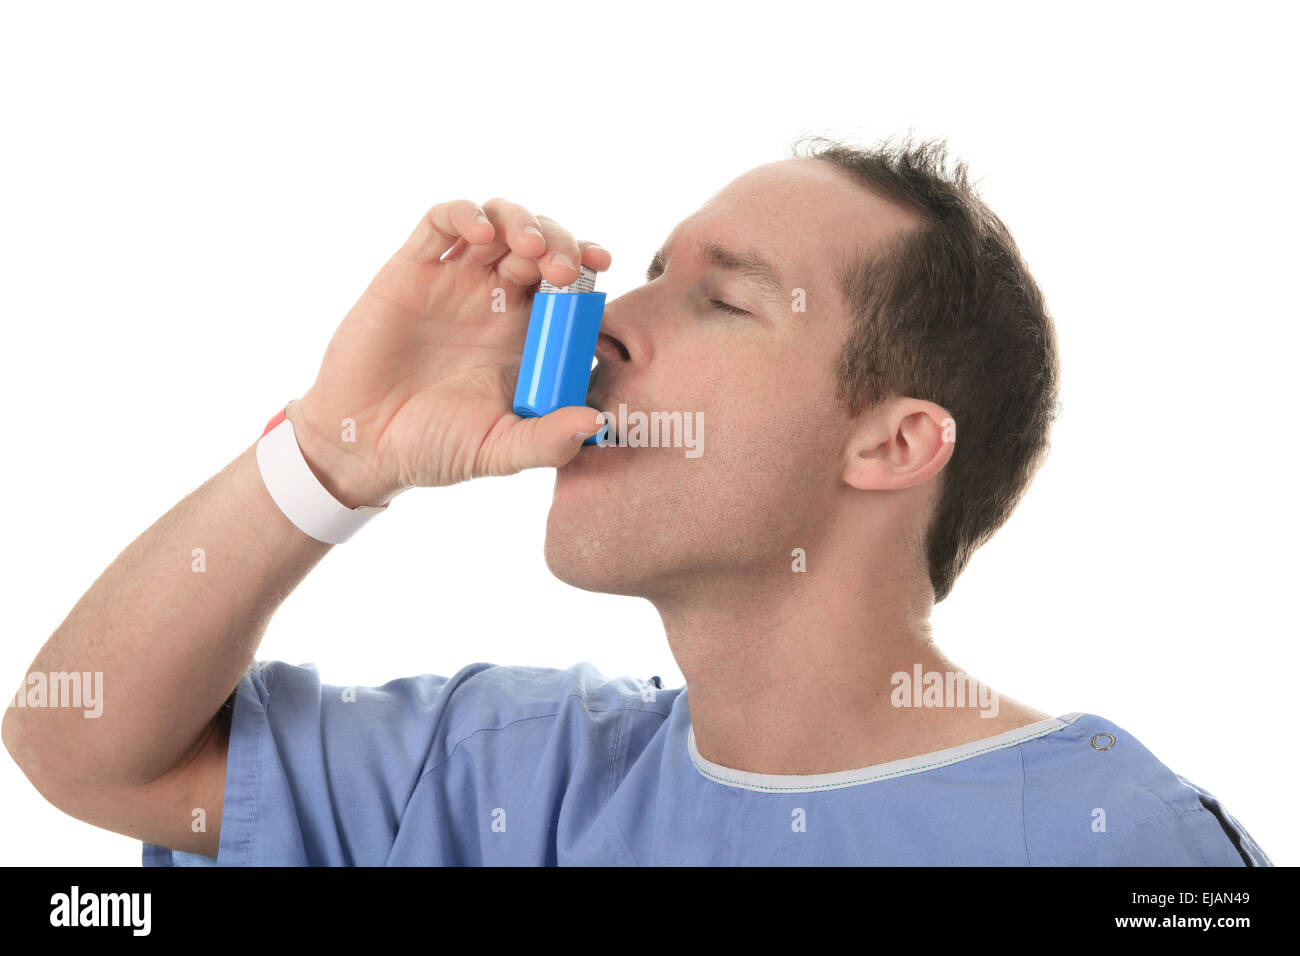 Панель астма. Астматик. Пациент кашляет. Ингалятор астма. Человек задыхается от астмы.